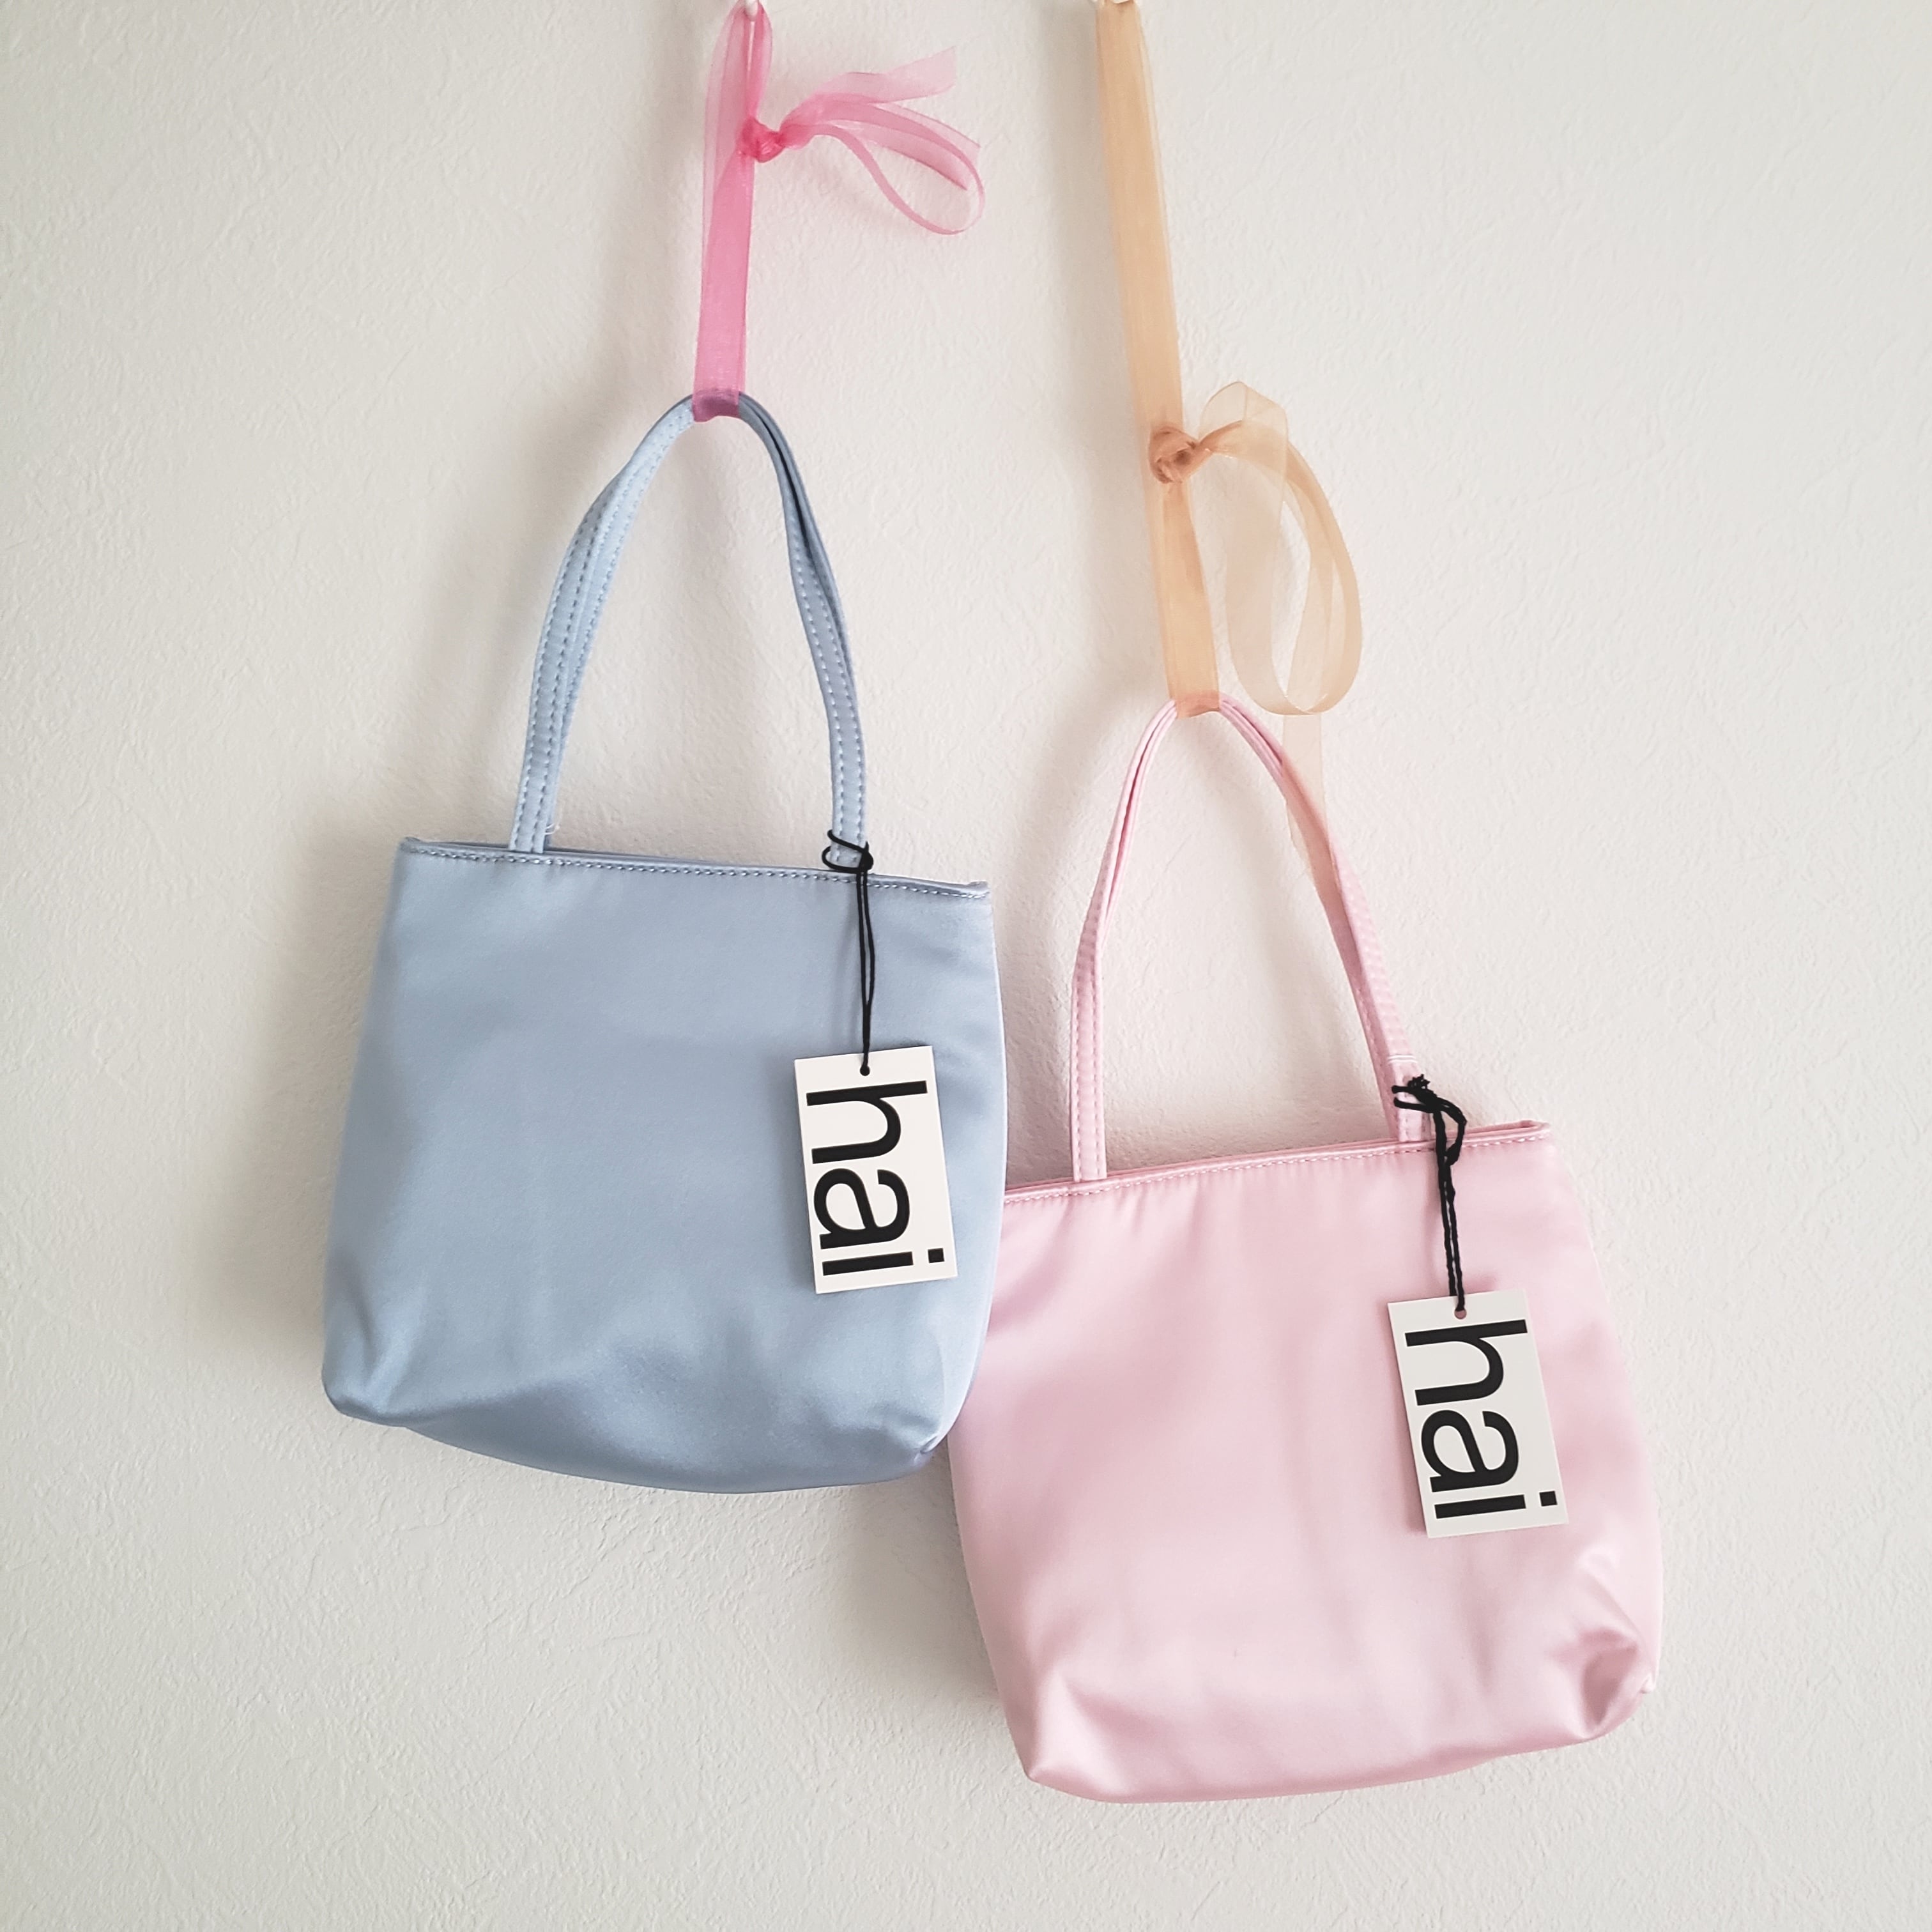 送料無料*【hai (ハイ)】新色入荷: Little Pink Bag / インポート ...